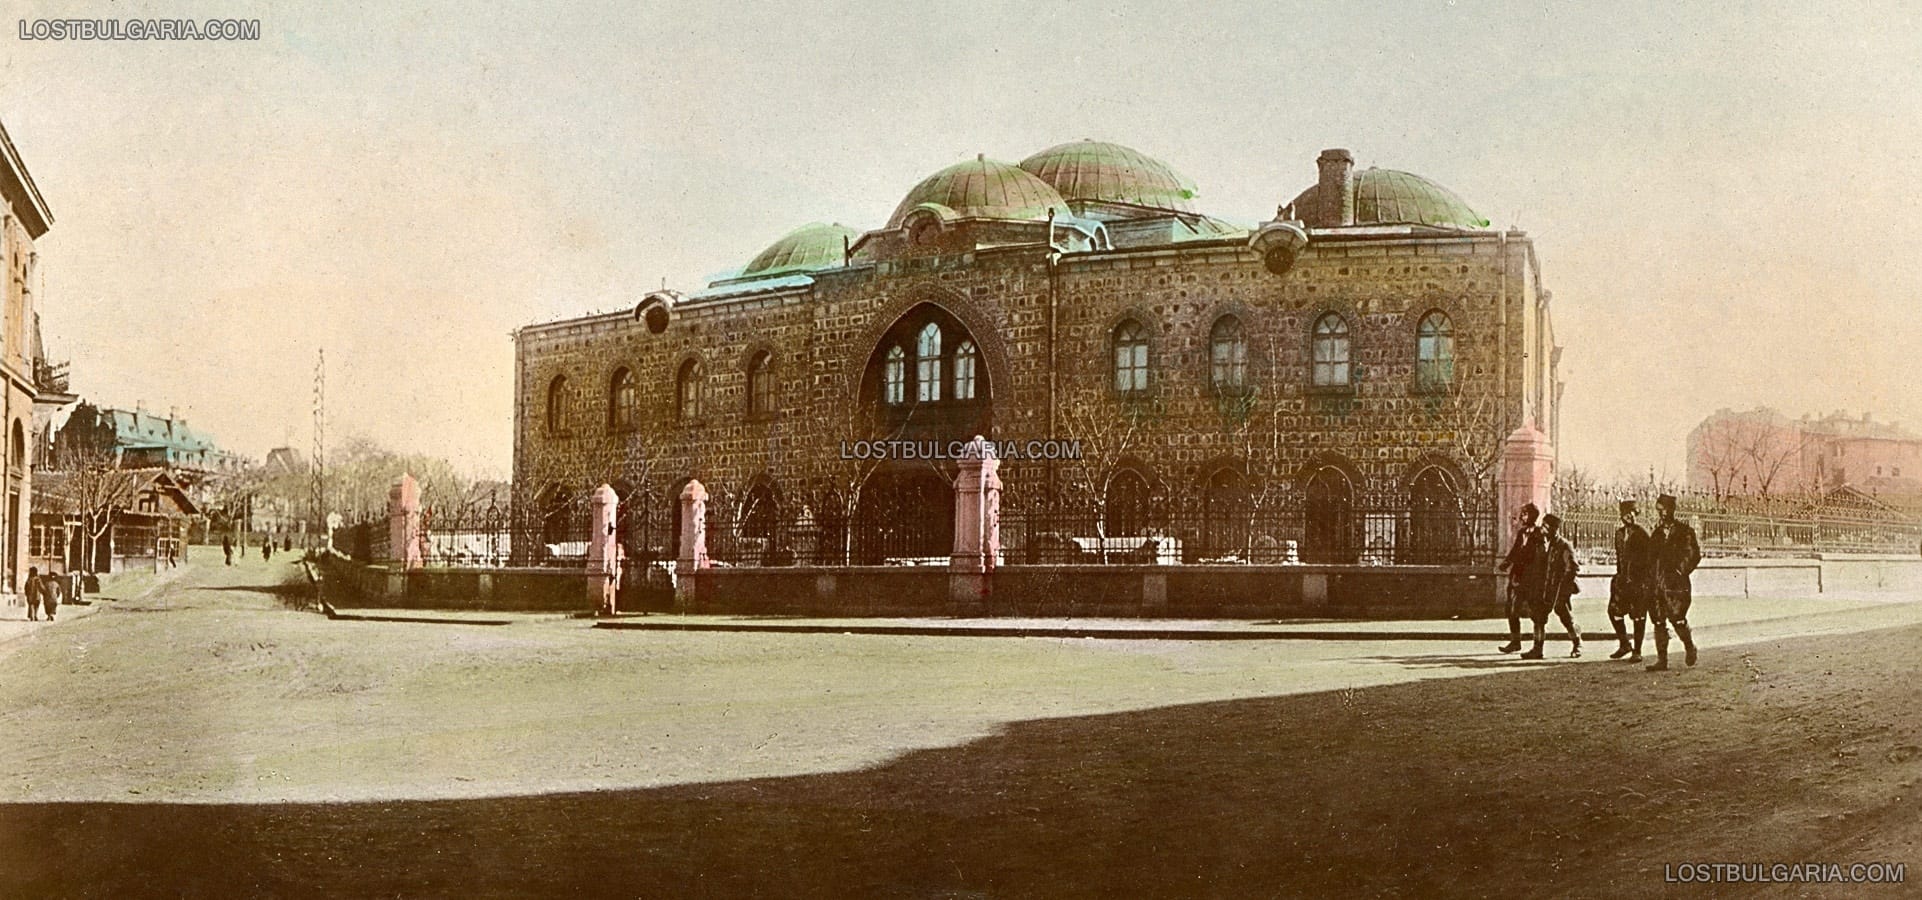 София, оцветена фотография от началото на ХХ век - Народният музей (днес Археологически) в сградата на Буюк джамия (строена в края на XV век), в дъното - Двореца, около 1905-6 г.